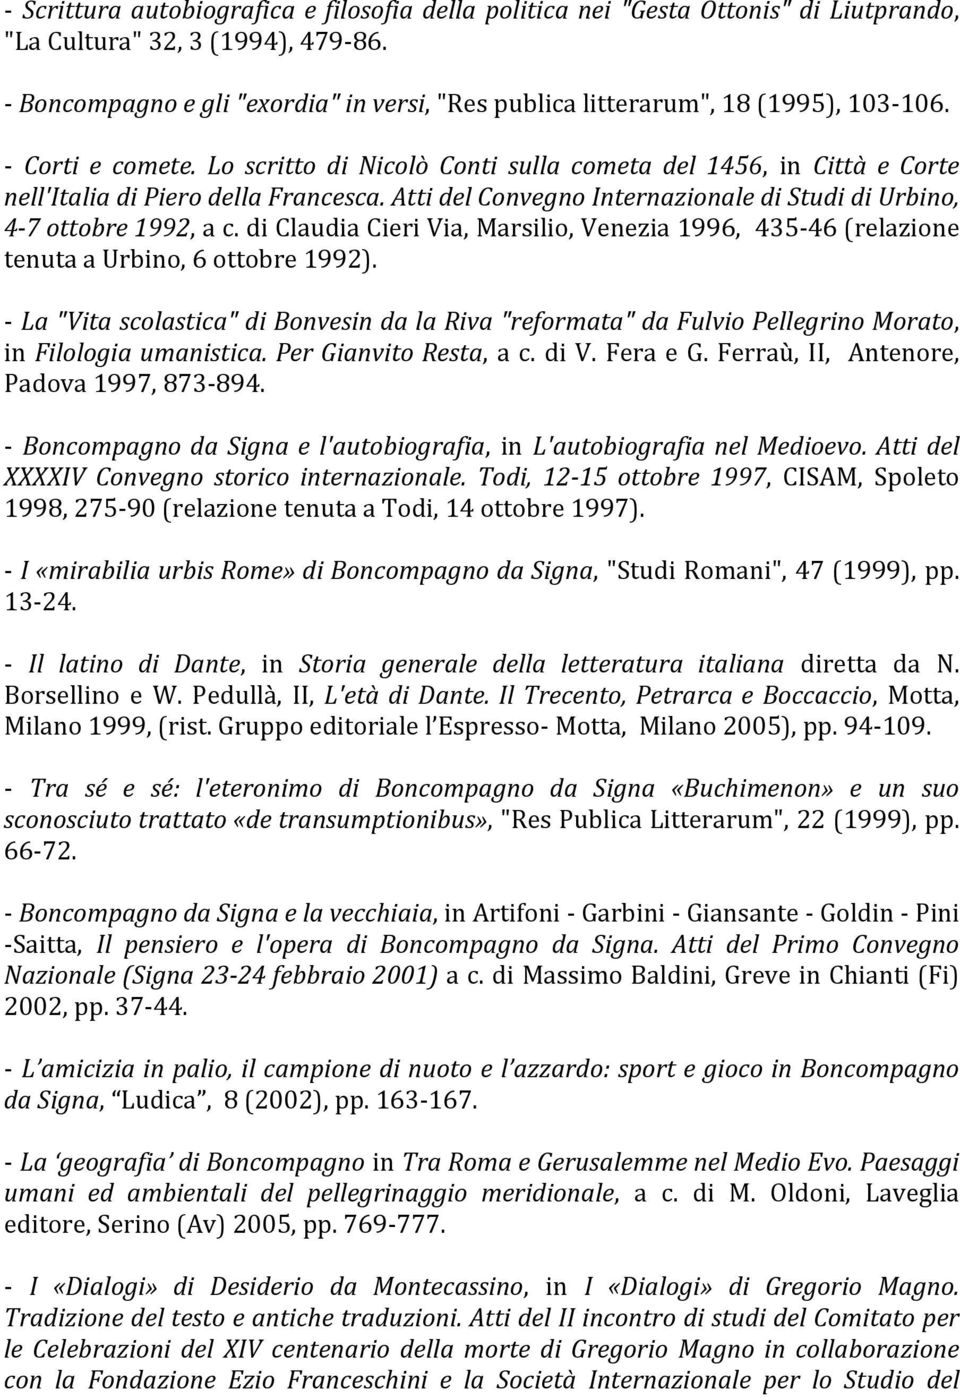 Lo scritto di Nicolò Conti sulla cometa del 1456, in Città e Corte nell'italia di Piero della Francesca. Atti del Convegno Internazionale di Studi di Urbino, 4-7 ottobre 1992, a c.